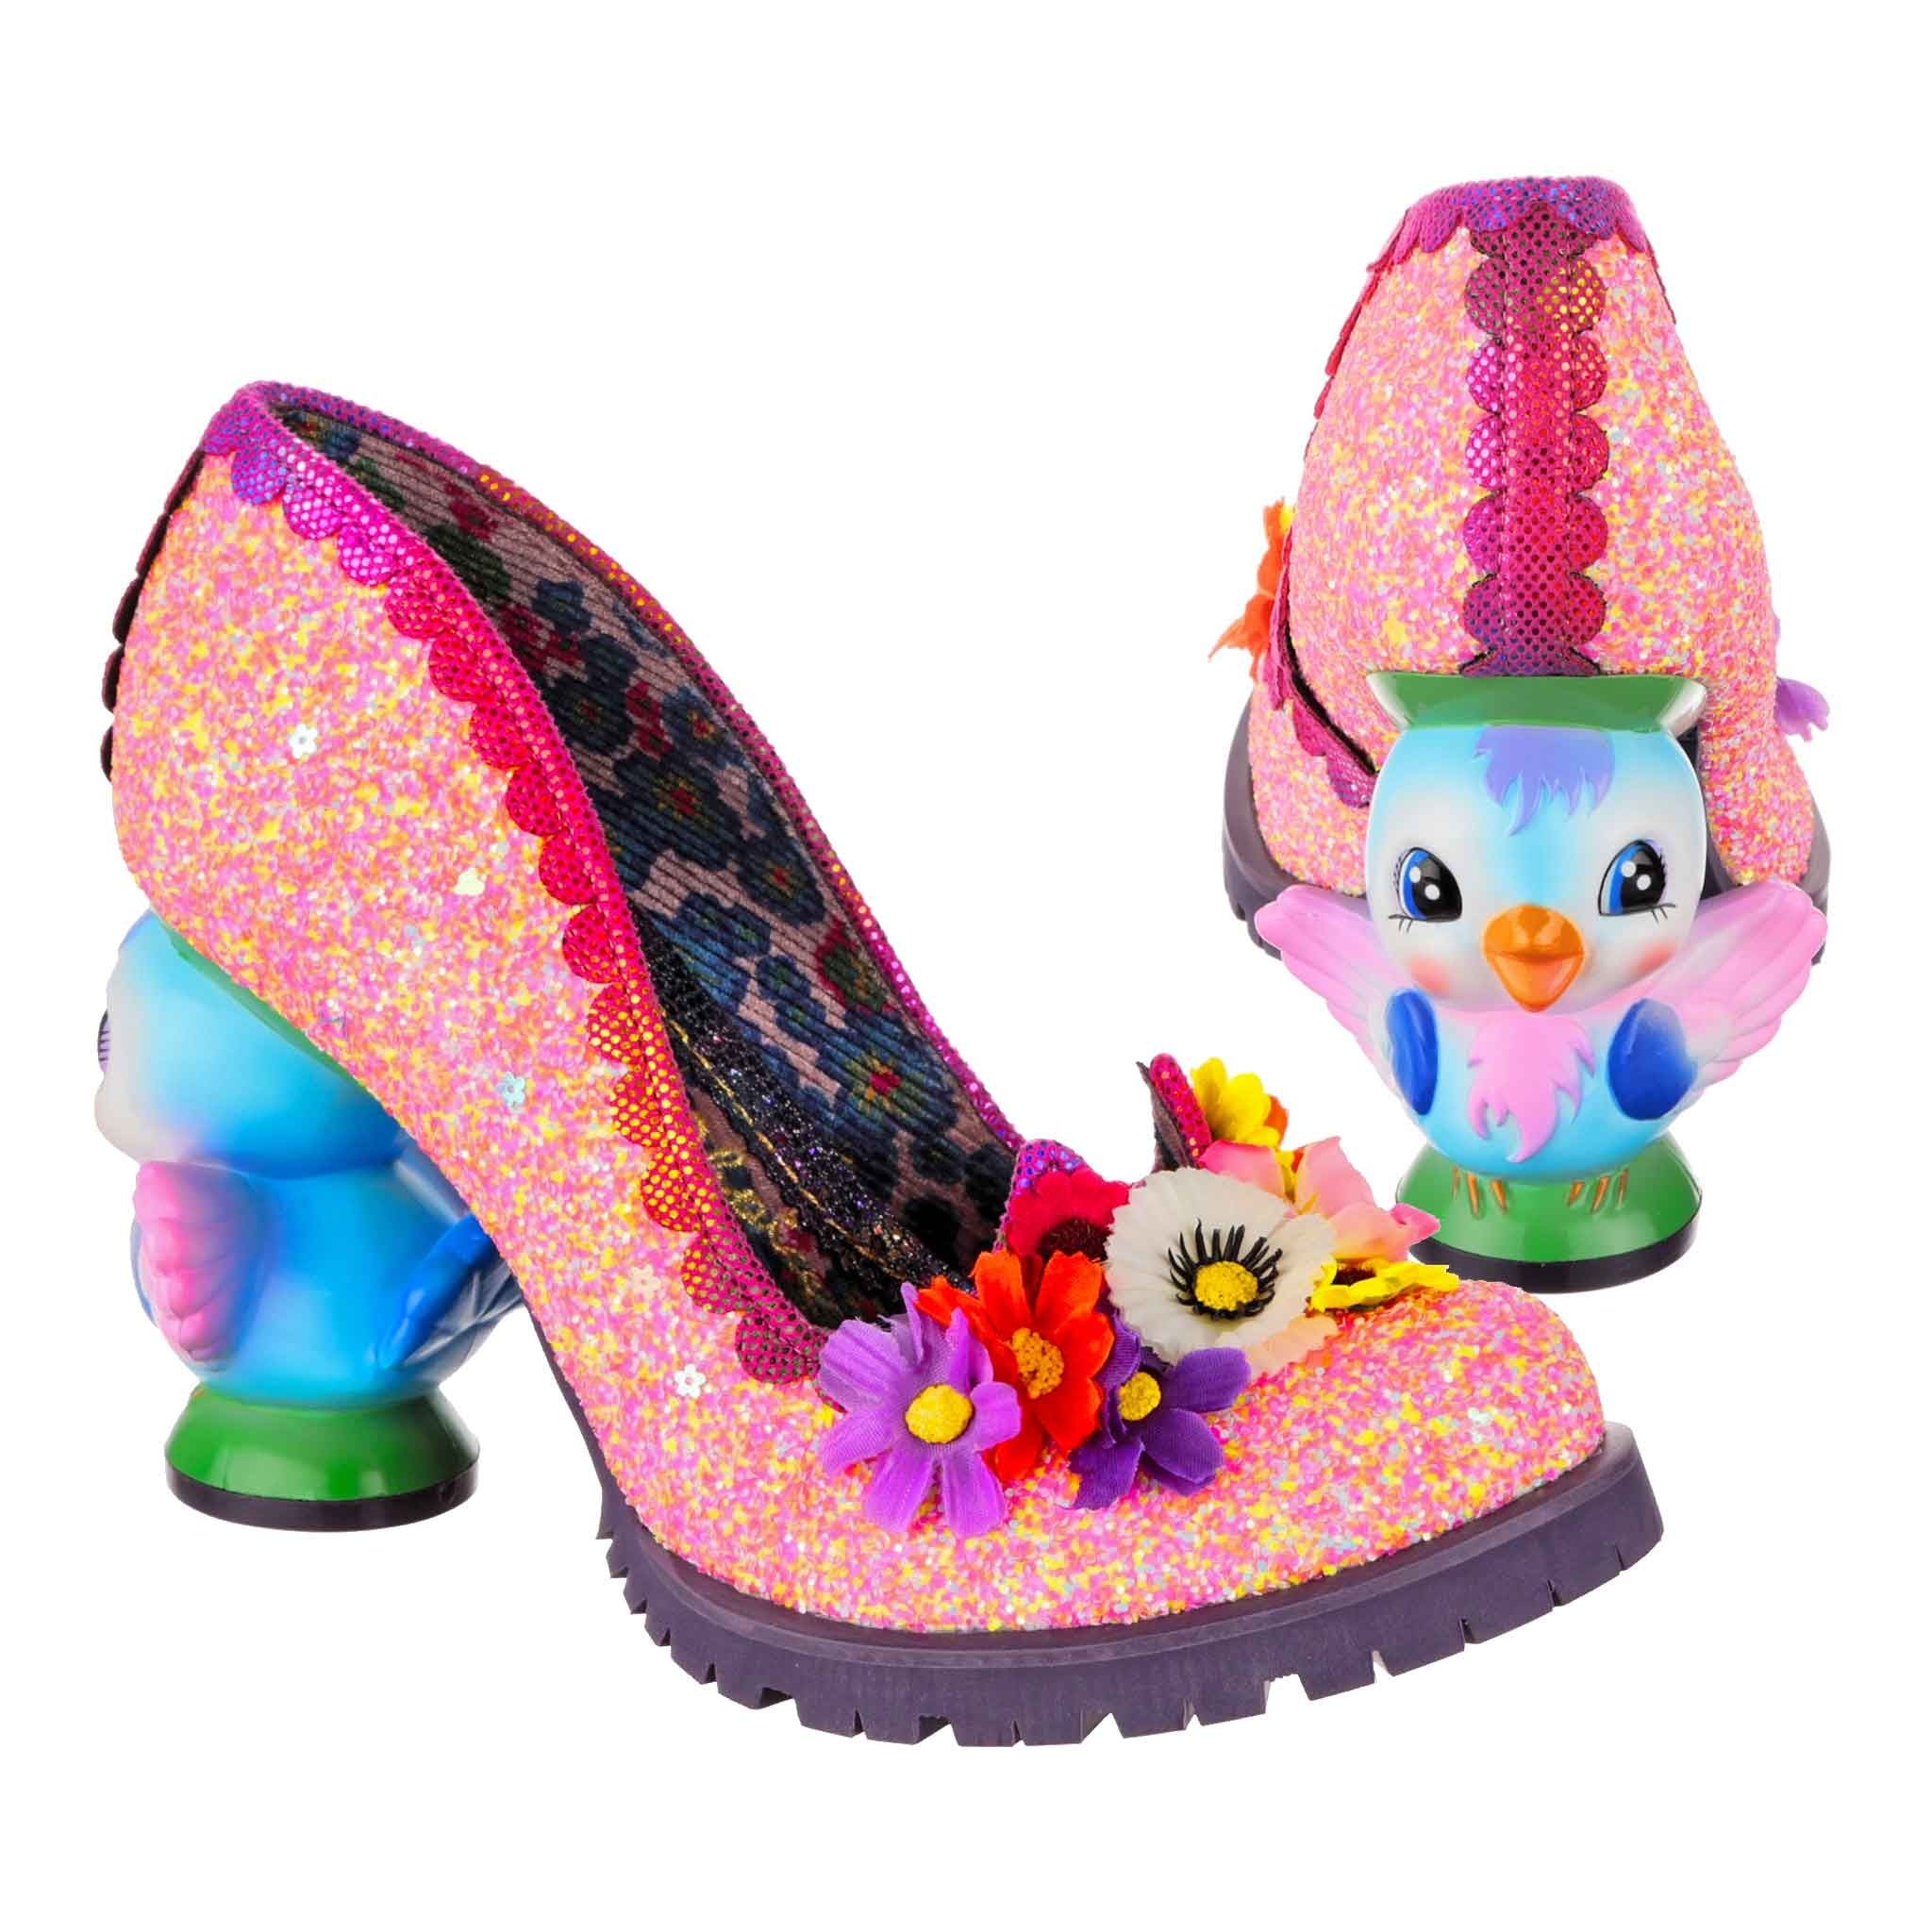 Irregular Choice Heels Hot Tropic Floral Open Toe Shoes | Irregular choice  heels, Funny shoes, Sparkly stilettos